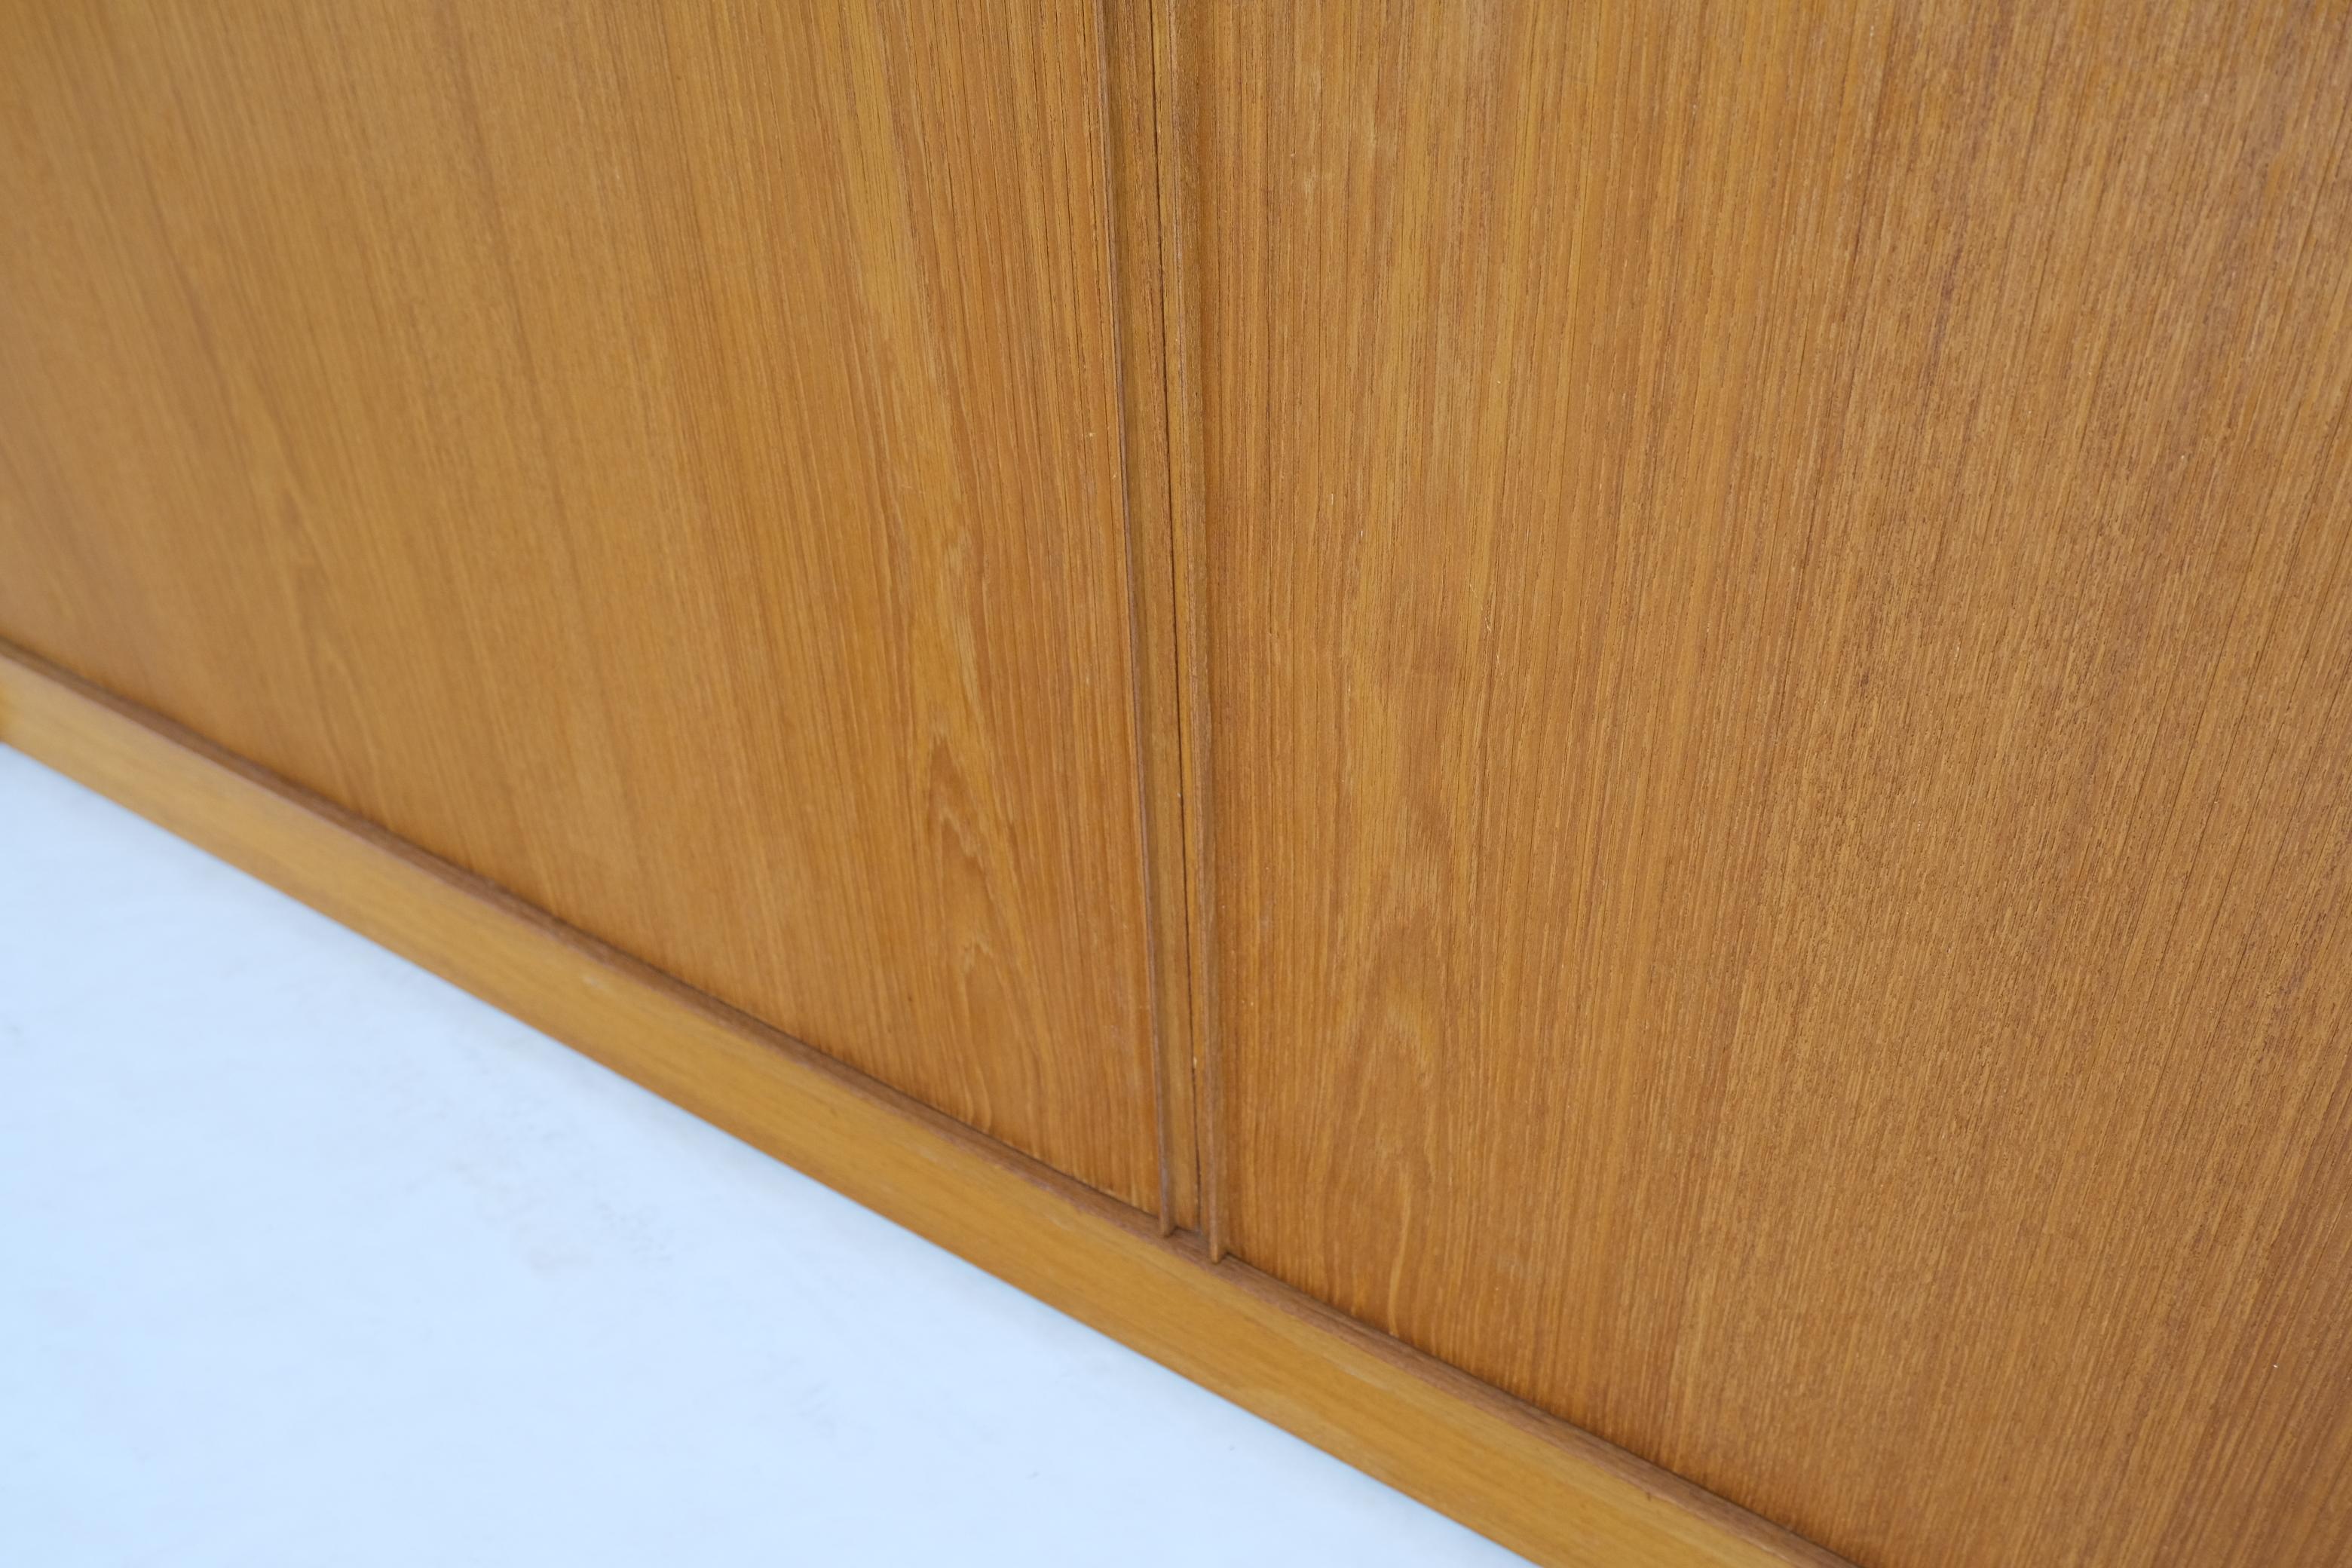 Tambour Doors 12 Deep Drawers 3 Shelves Danish Teak Mid-Century Modern Credenza For Sale 10